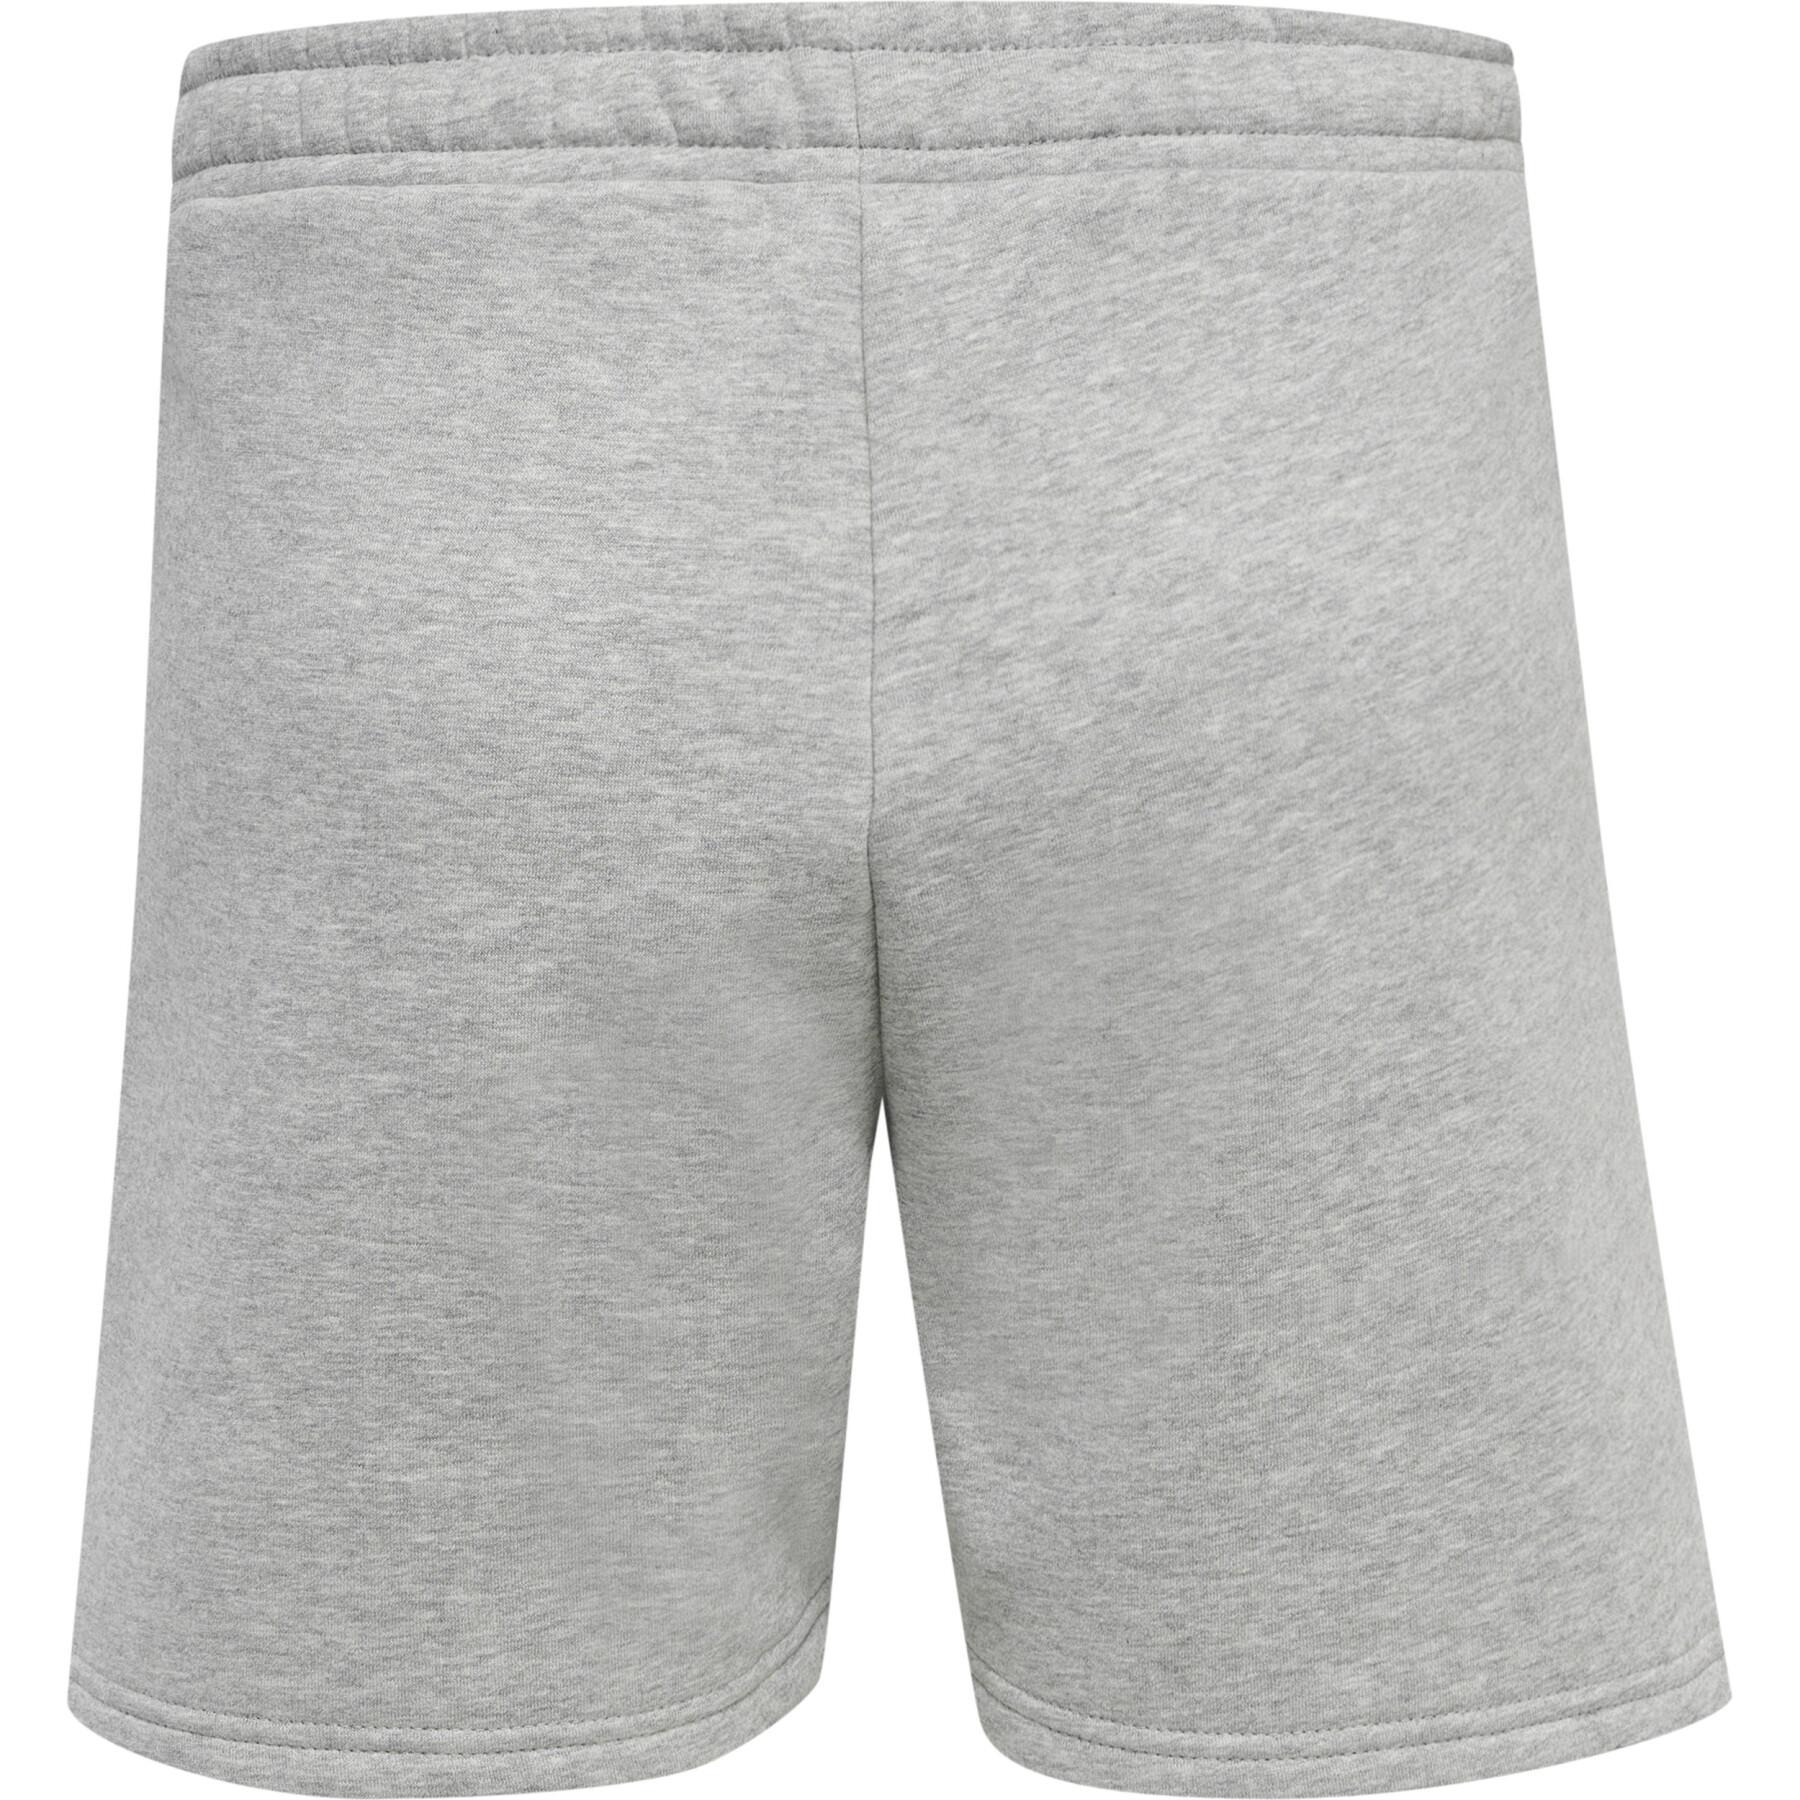 Women's shorts Hummel GG - 12